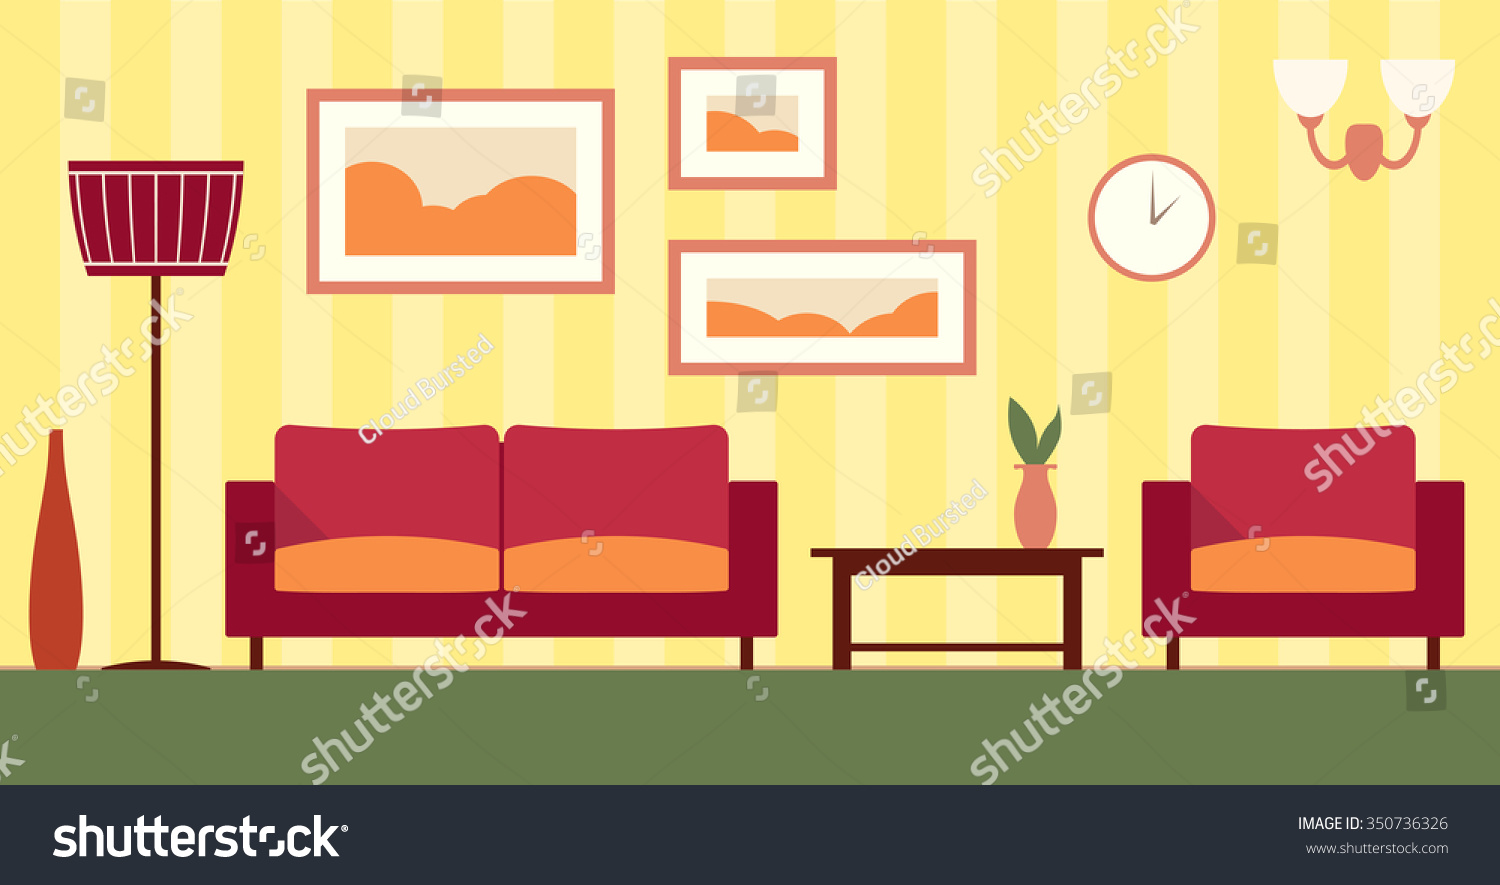 Color Interior Cartoon Living Room Stock Illustration 350736326 ...